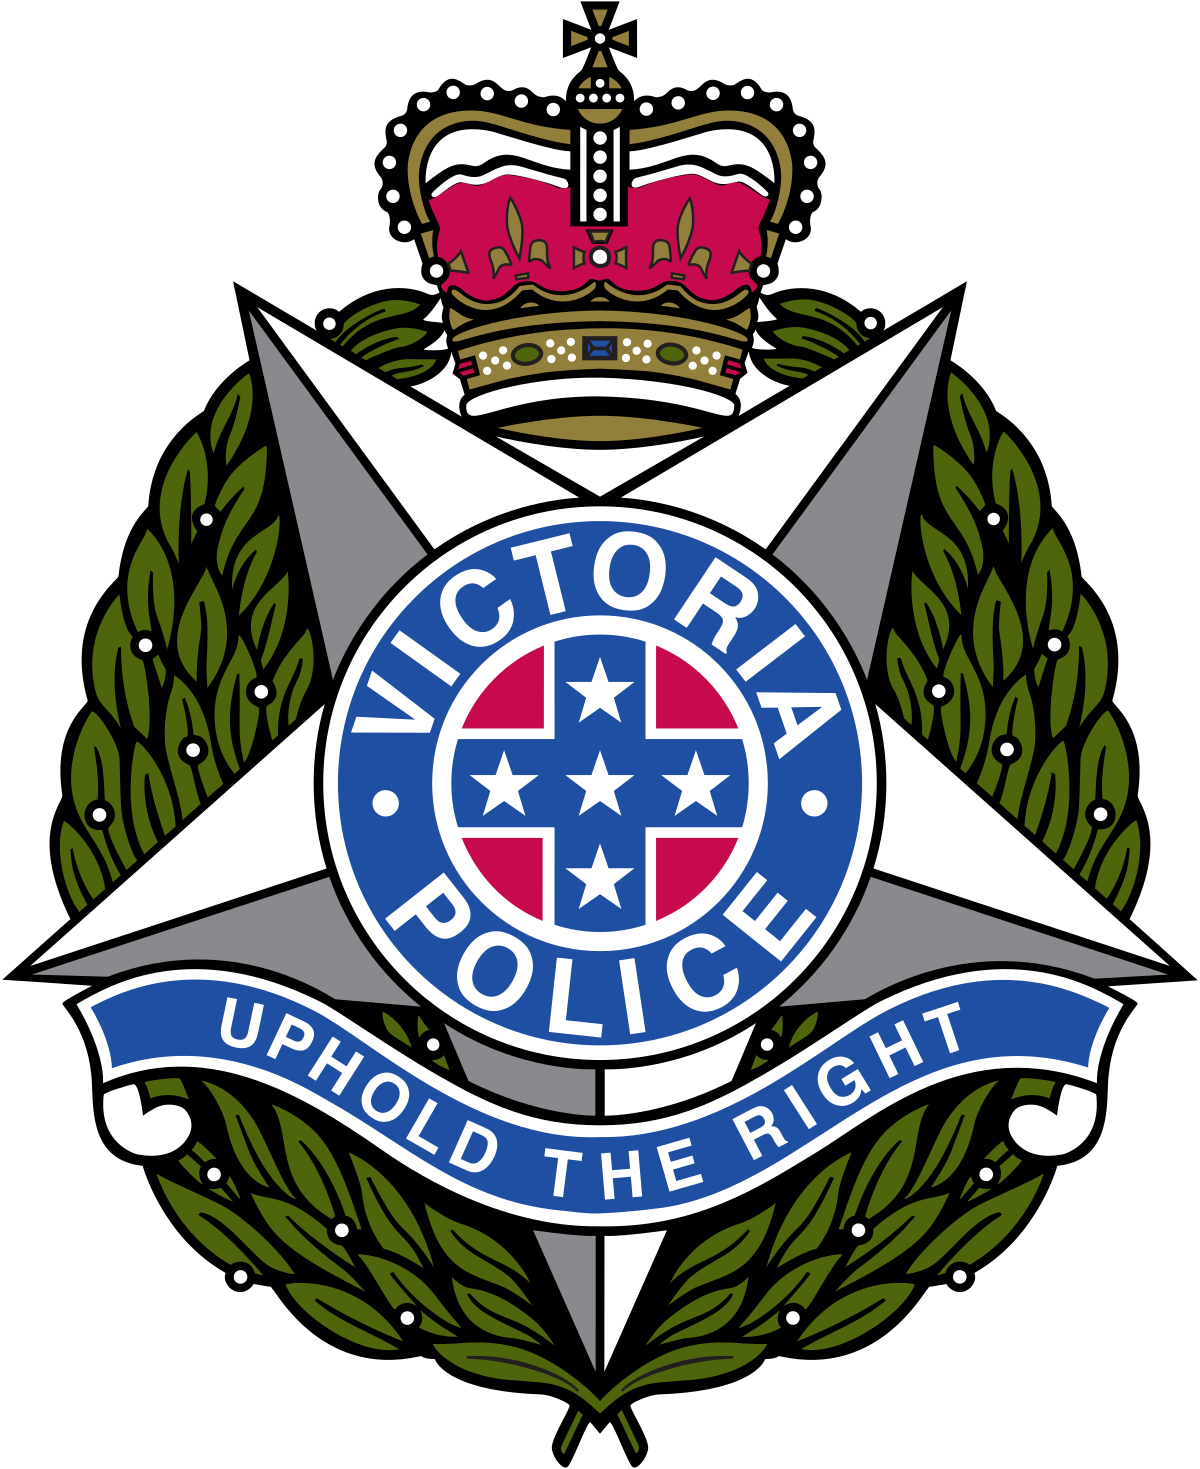 Victoria Police - Wikipedia